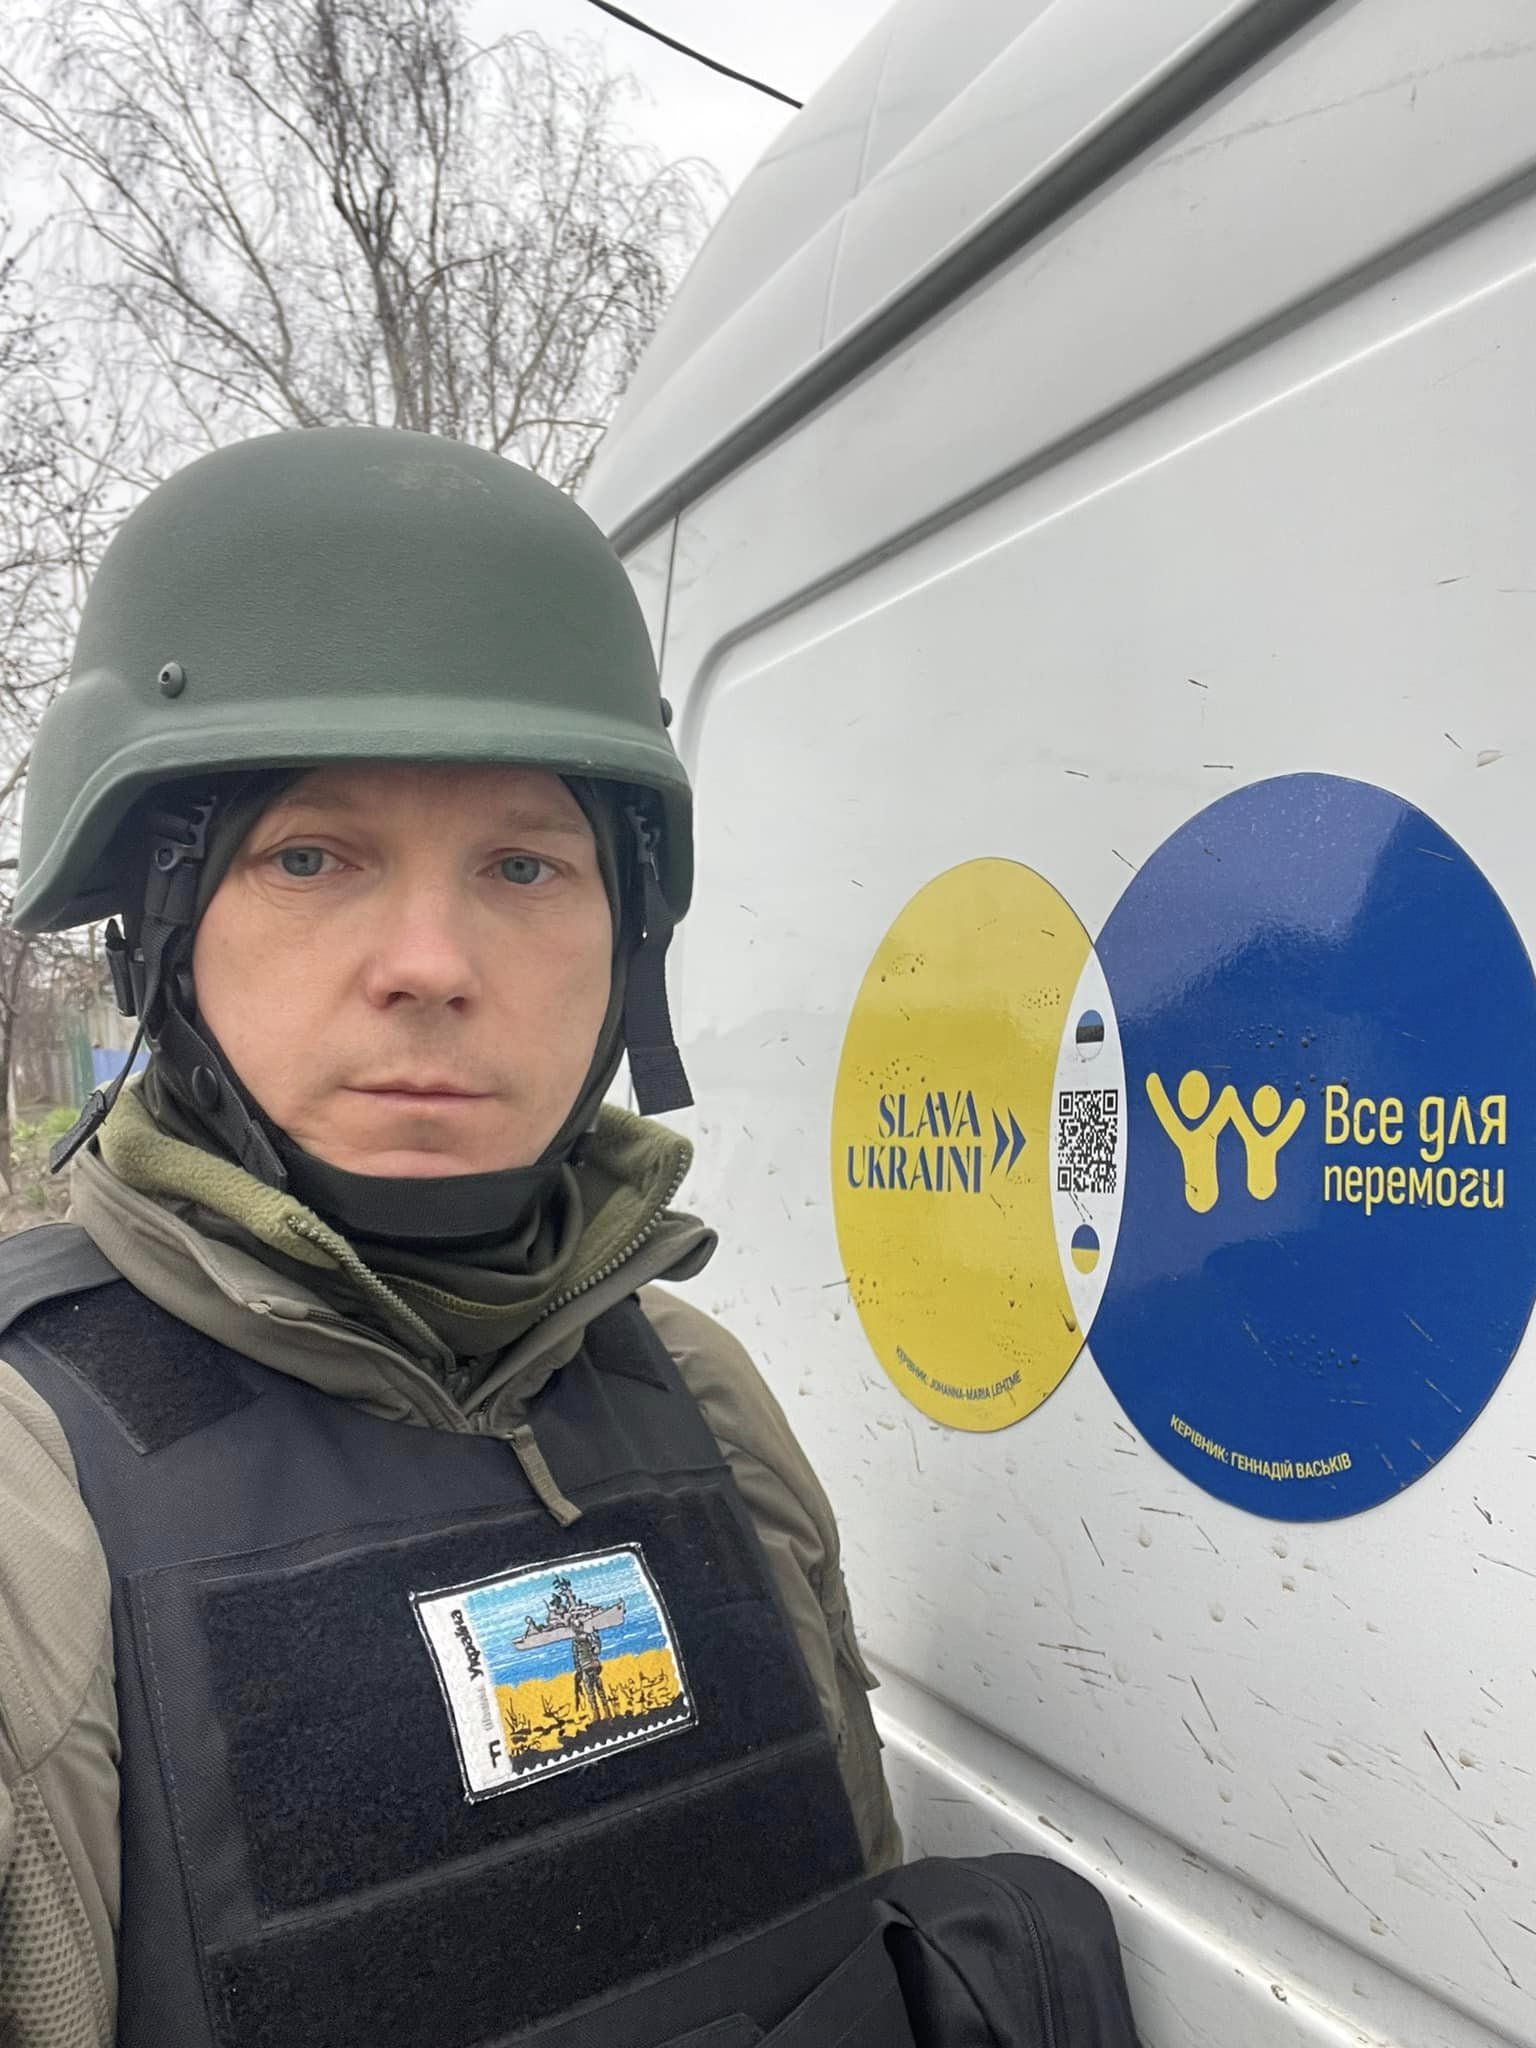 Донаты, оружие, любовь. Как эстонская депутатка и украинец попали в коррупционный скандал